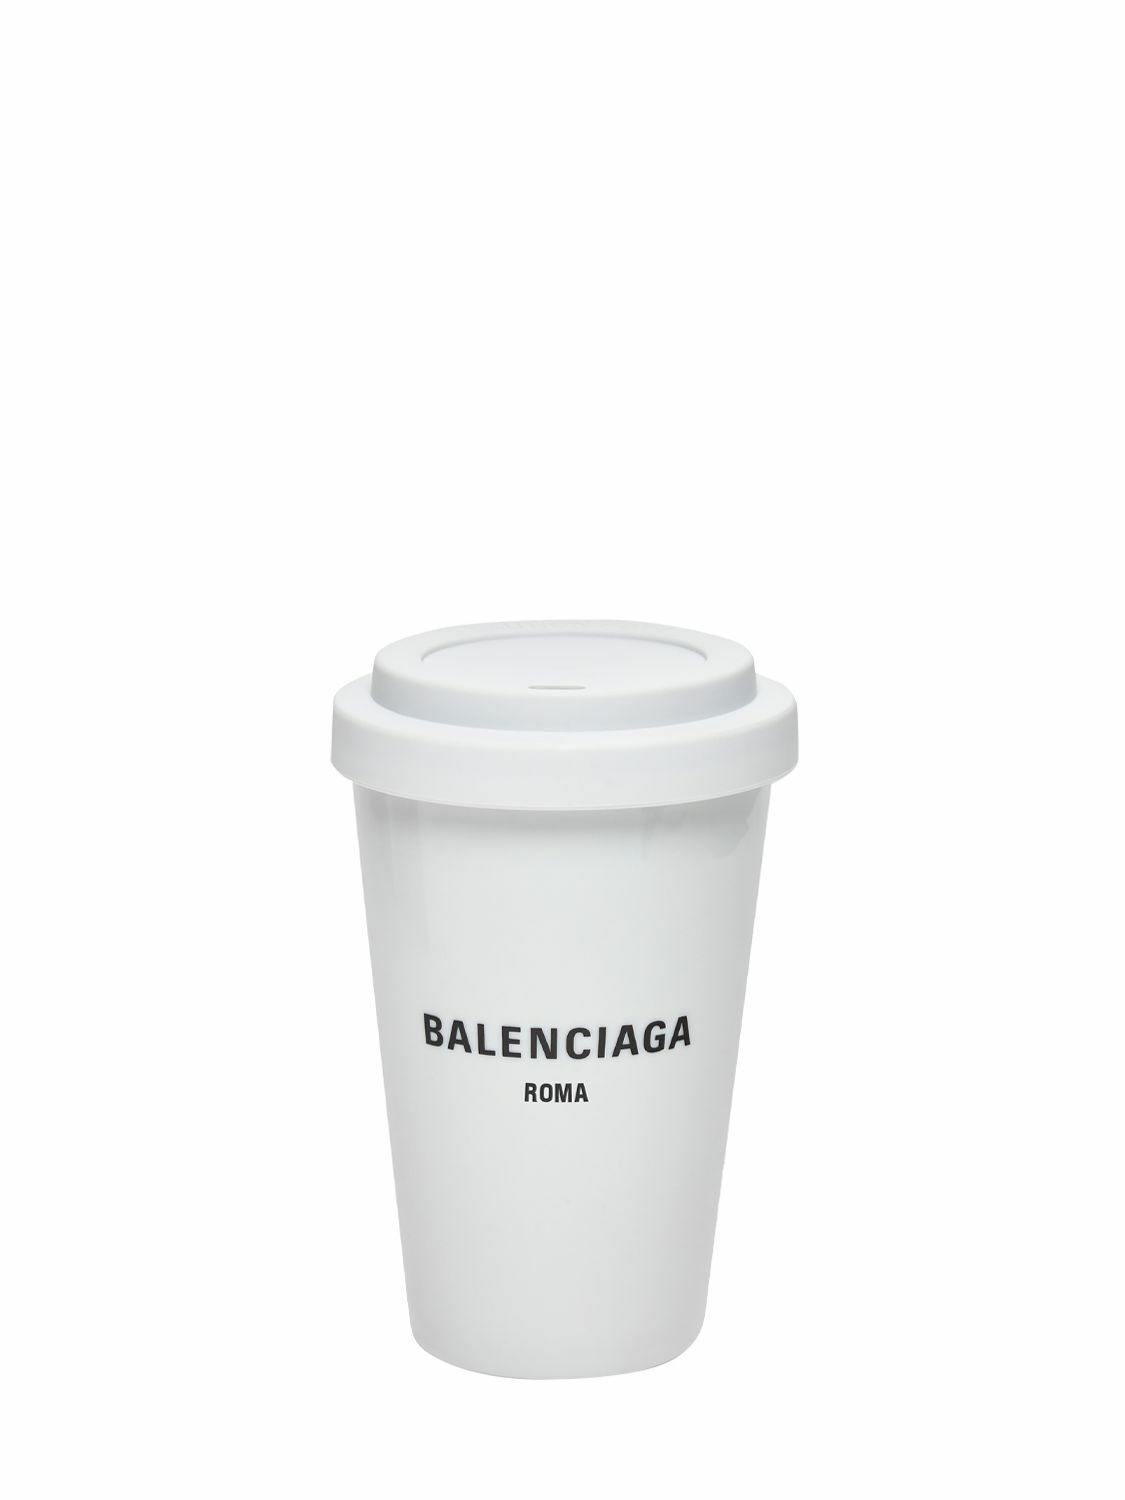 Photo: BALENCIAGA - Roma Porcelain Coffee Cup